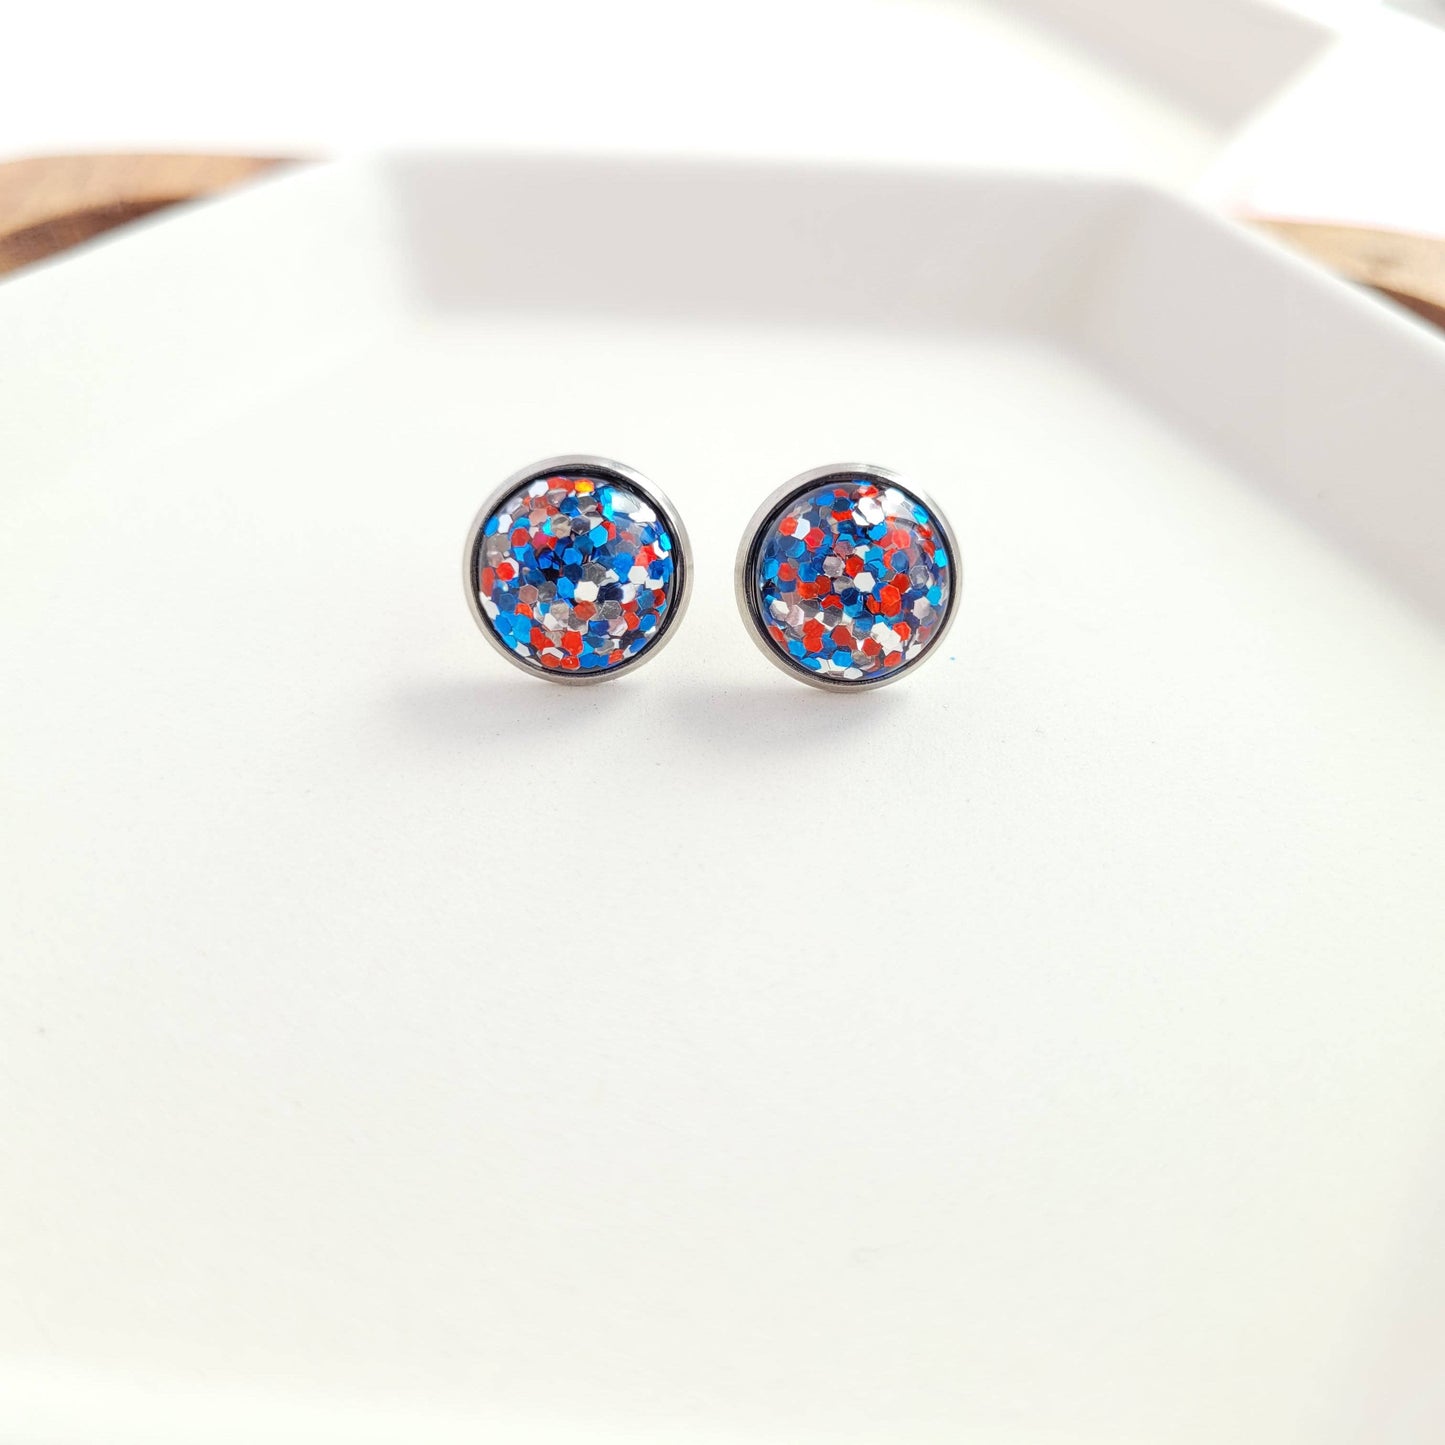 Spiffy & Splendid | Partytime Stud Earrings, red white & blue